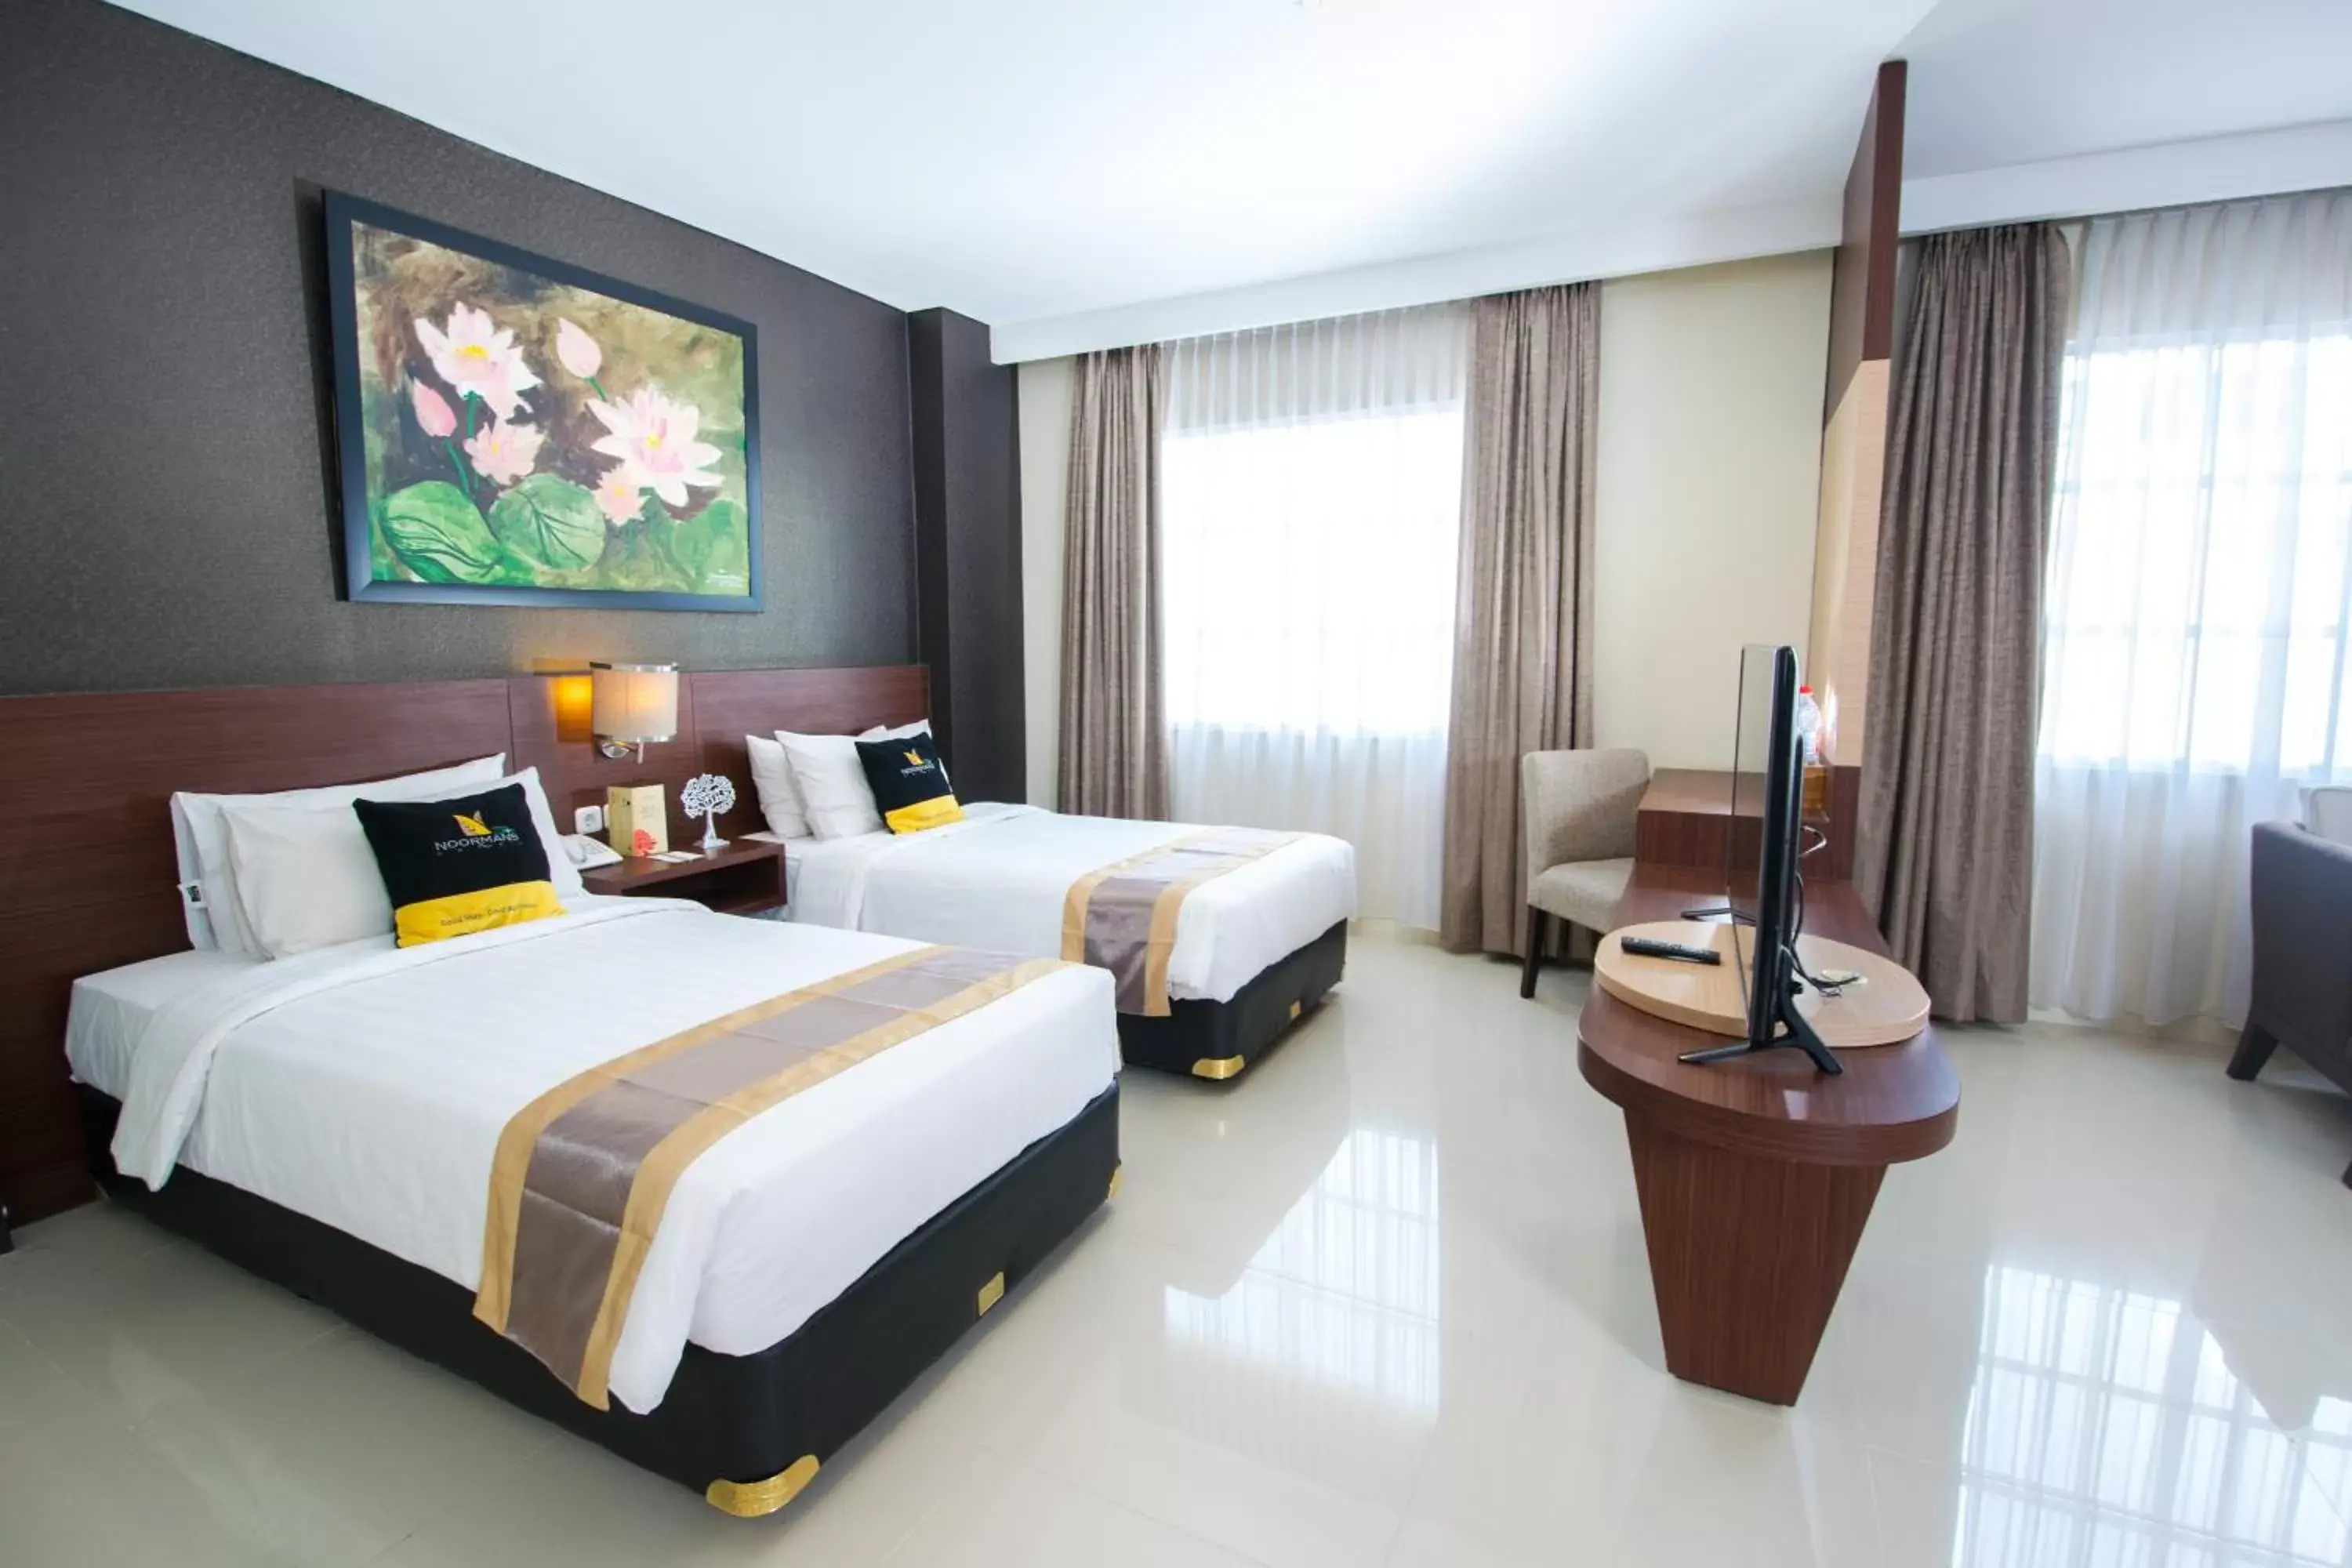 King Room in Noormans Hotel Semarang